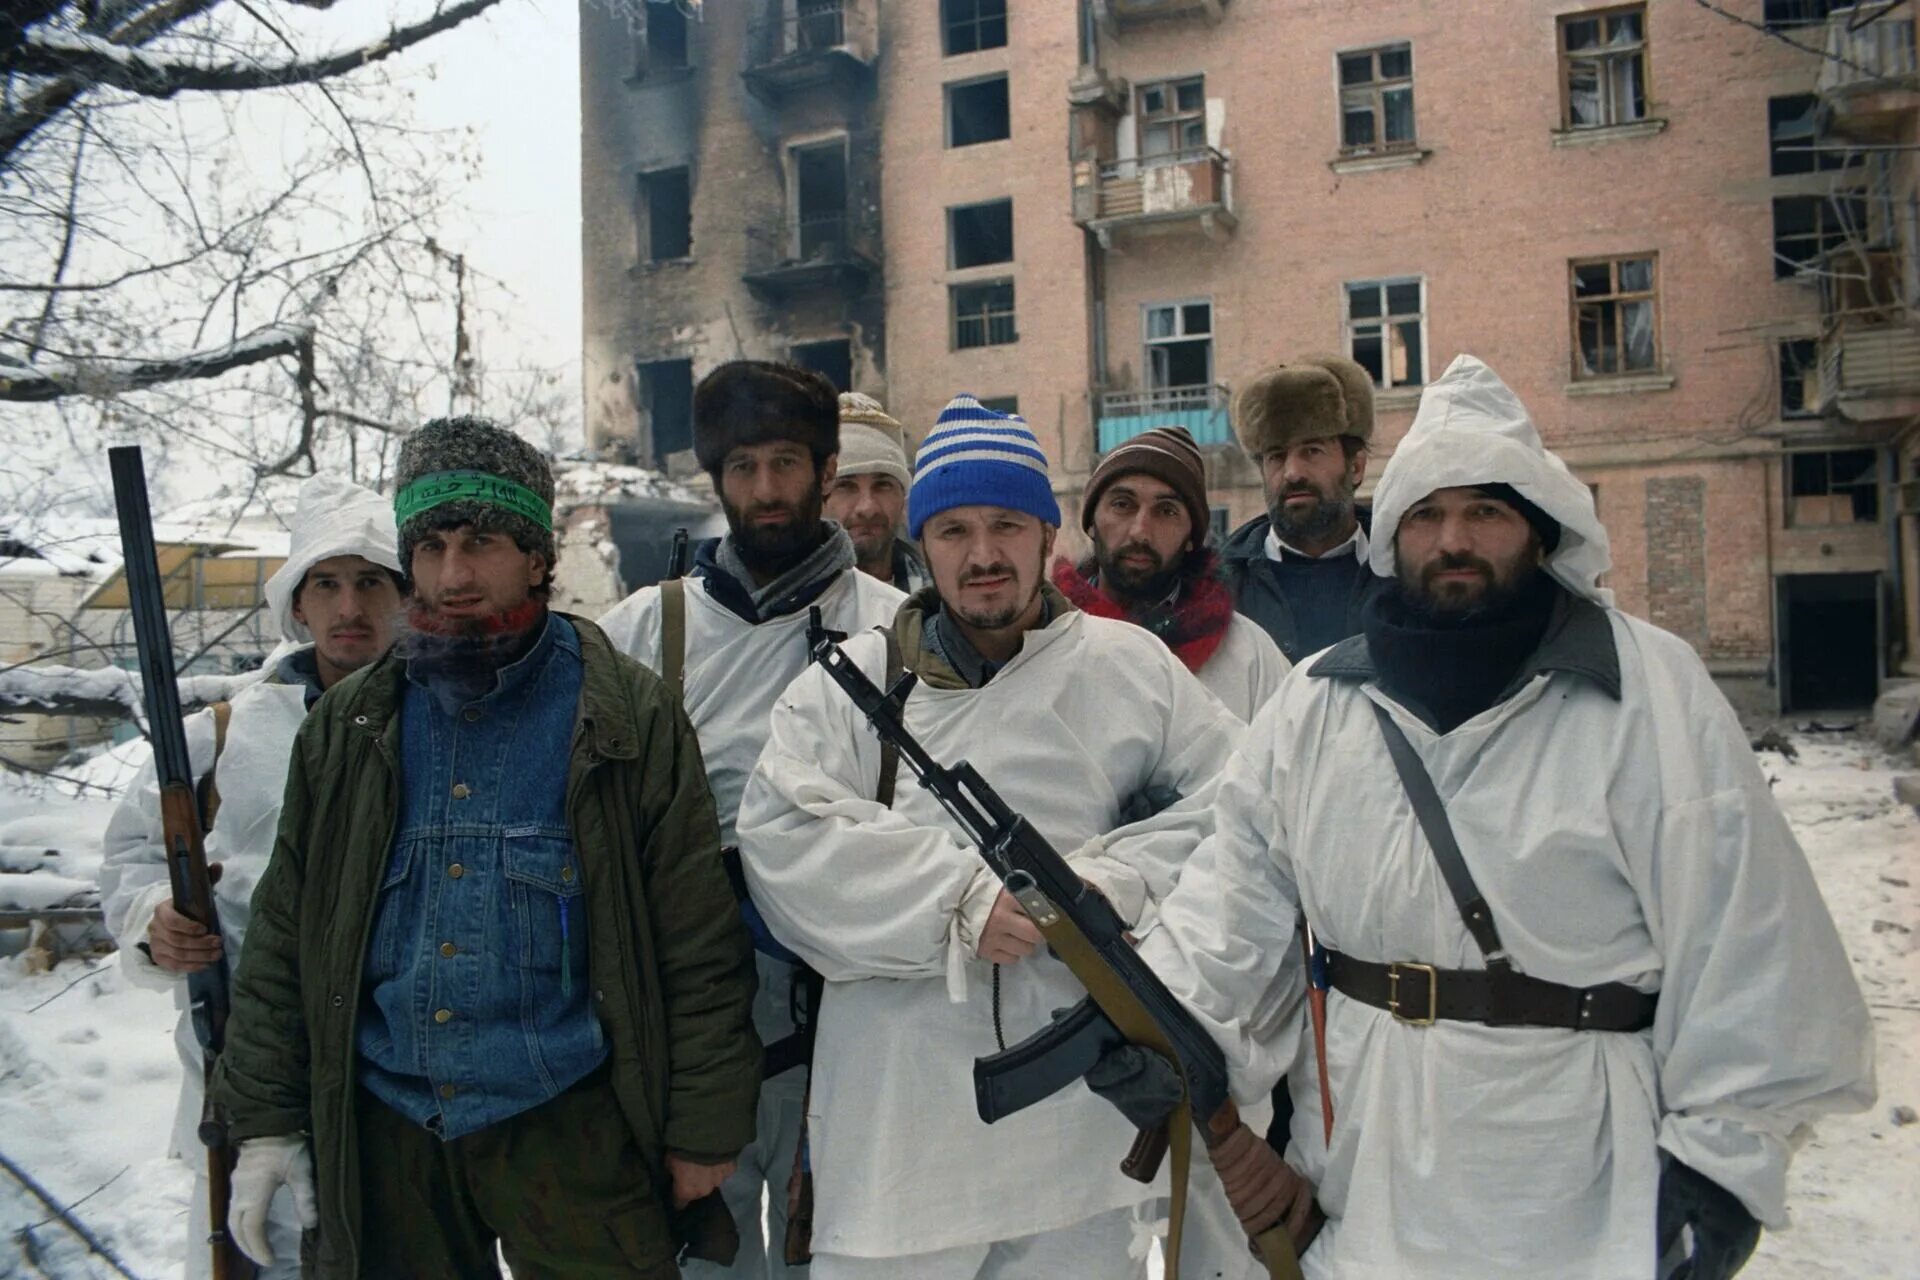 Чеченский боевики 1994 1995 Грозный. Чеченский боевик в Грозном, январь 1995 г. Чеченские боевики 1995 год Грозный.